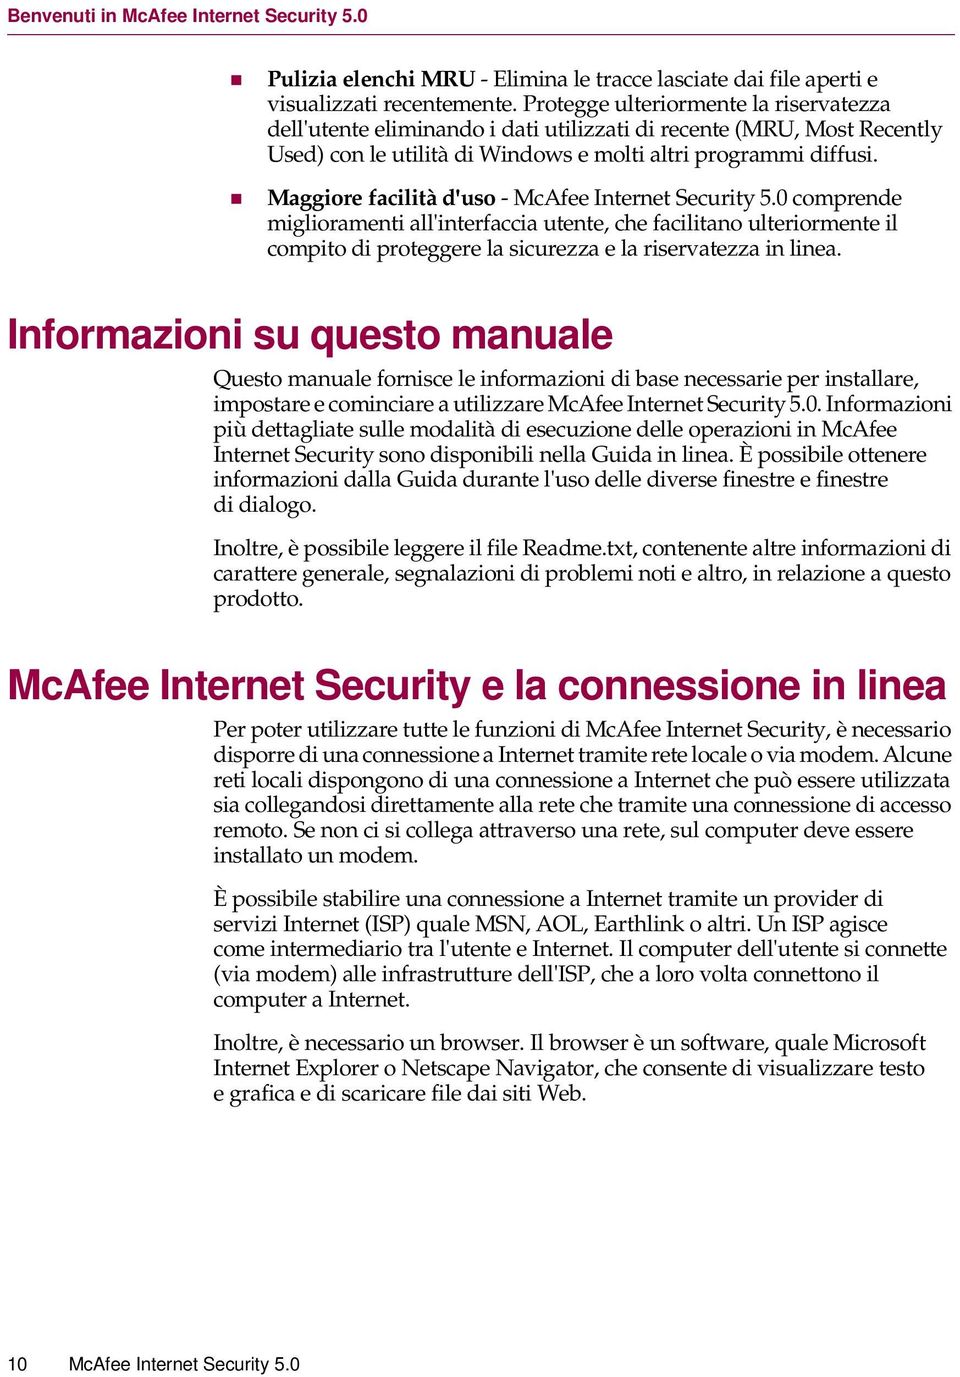 Maggiore facilità d'uso - McAfee Internet Security 5.0 comprende miglioramenti all'interfaccia utente, che facilitano ulteriormente il compito di proteggere la sicurezza e la riservatezza in linea.